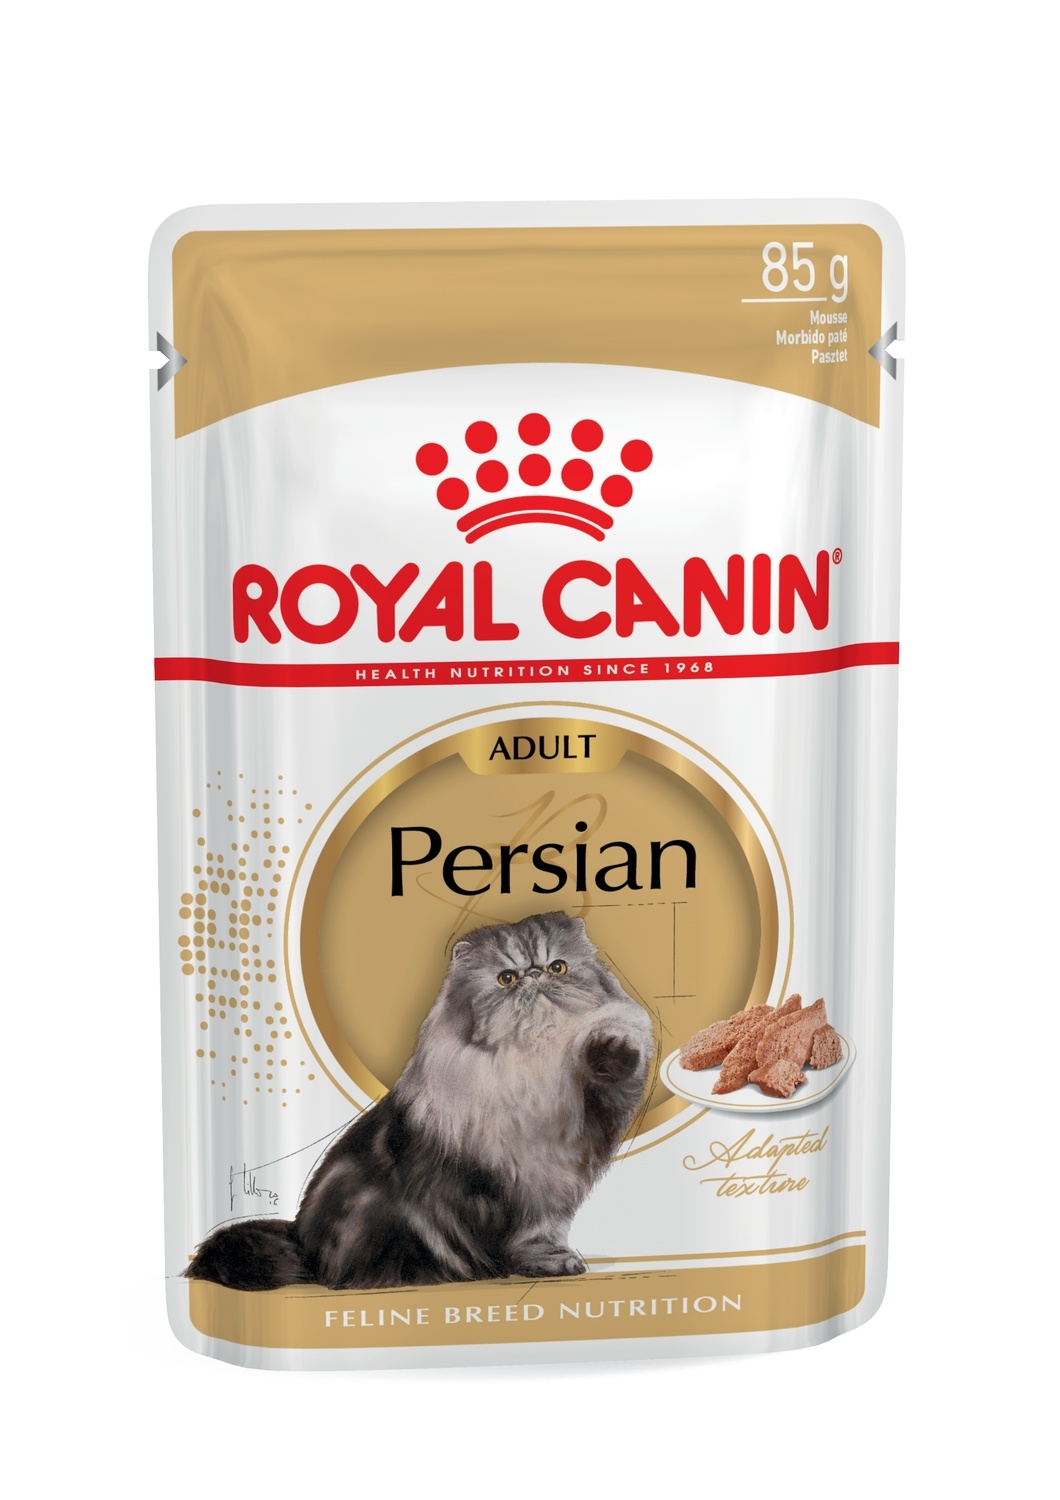 Royal Canin паучи для взрослых персидских кошек (паштет) (85 г)